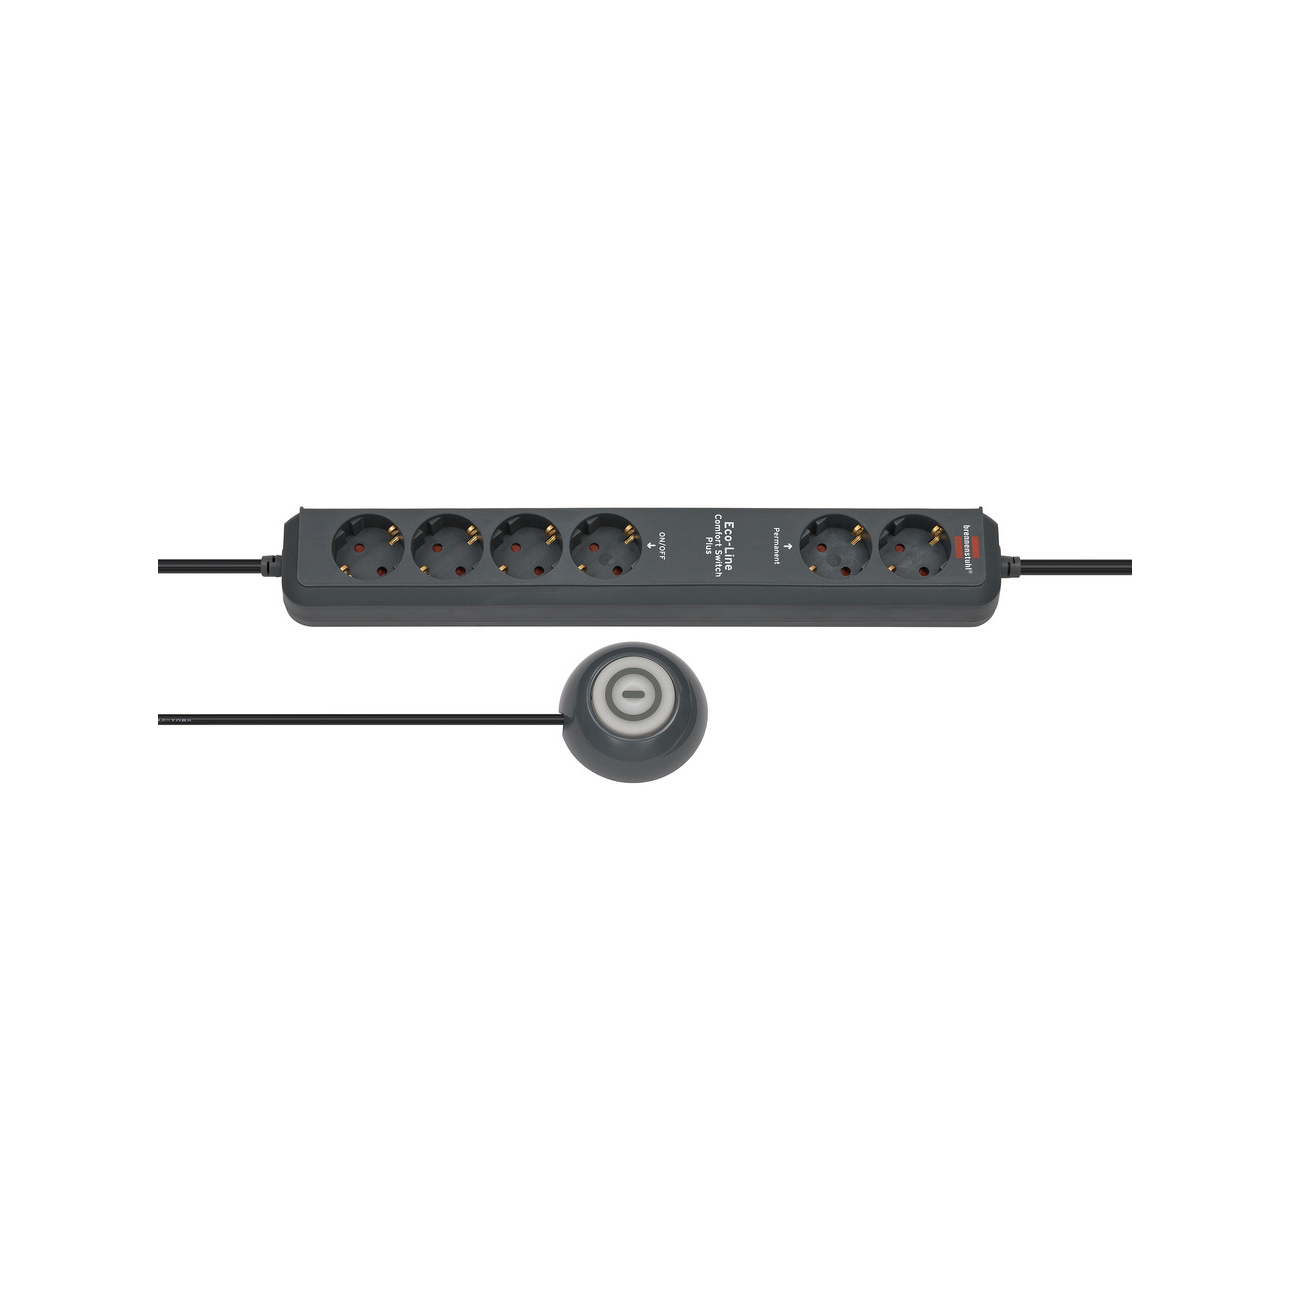 Удлинитель Brennenstuhl  Eco-Line Comfort Plus EL CSP 24 с выносной кнопкой 6 розеток кабель 1,5 м H05VV-F 3G1,5 1159560516